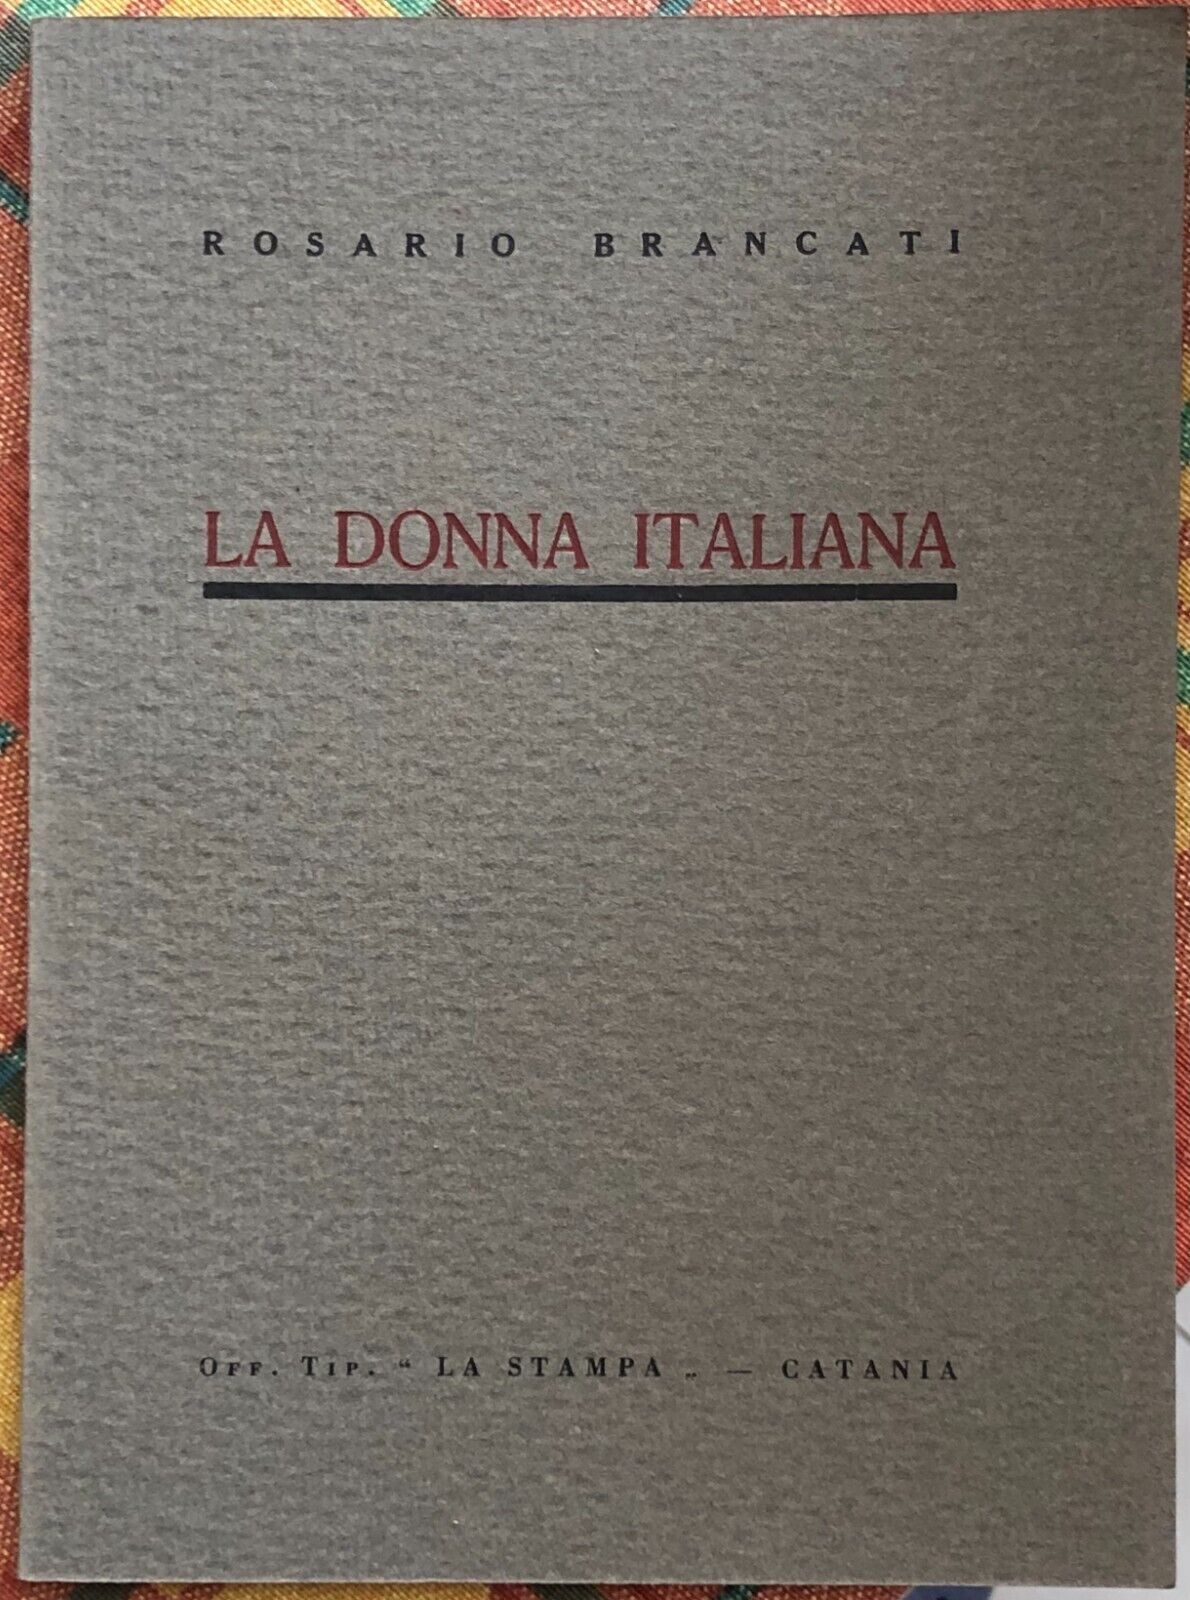 La donna italiana di Rosario Brancati, 1936, Off. Tip. La Stampa - Catania